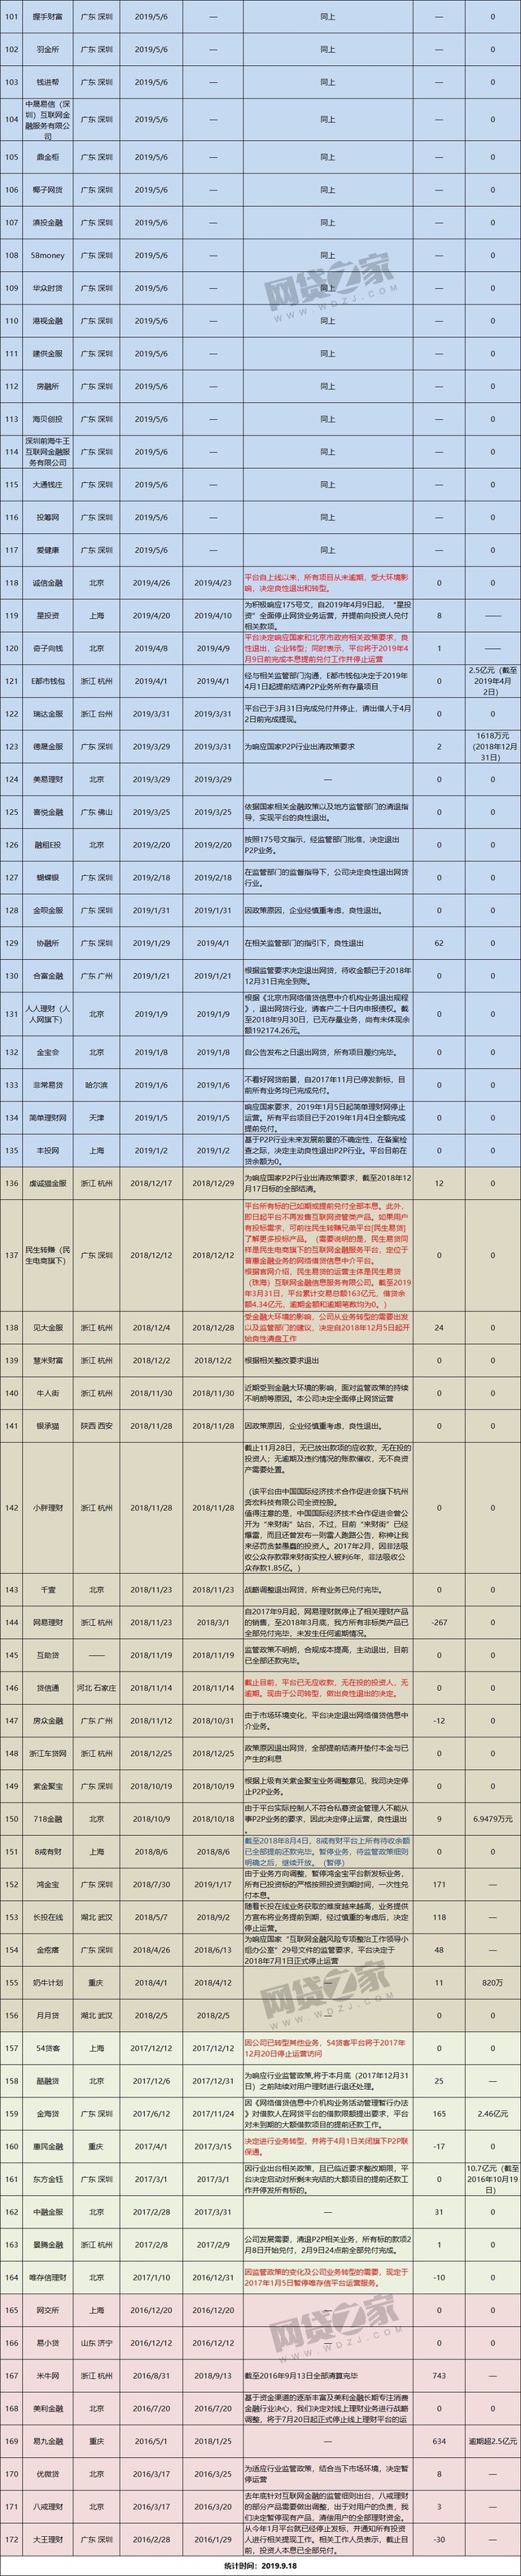 网贷之家：172家P2P平台完成100%兑付 大部分位于深圳_金融_电商之家